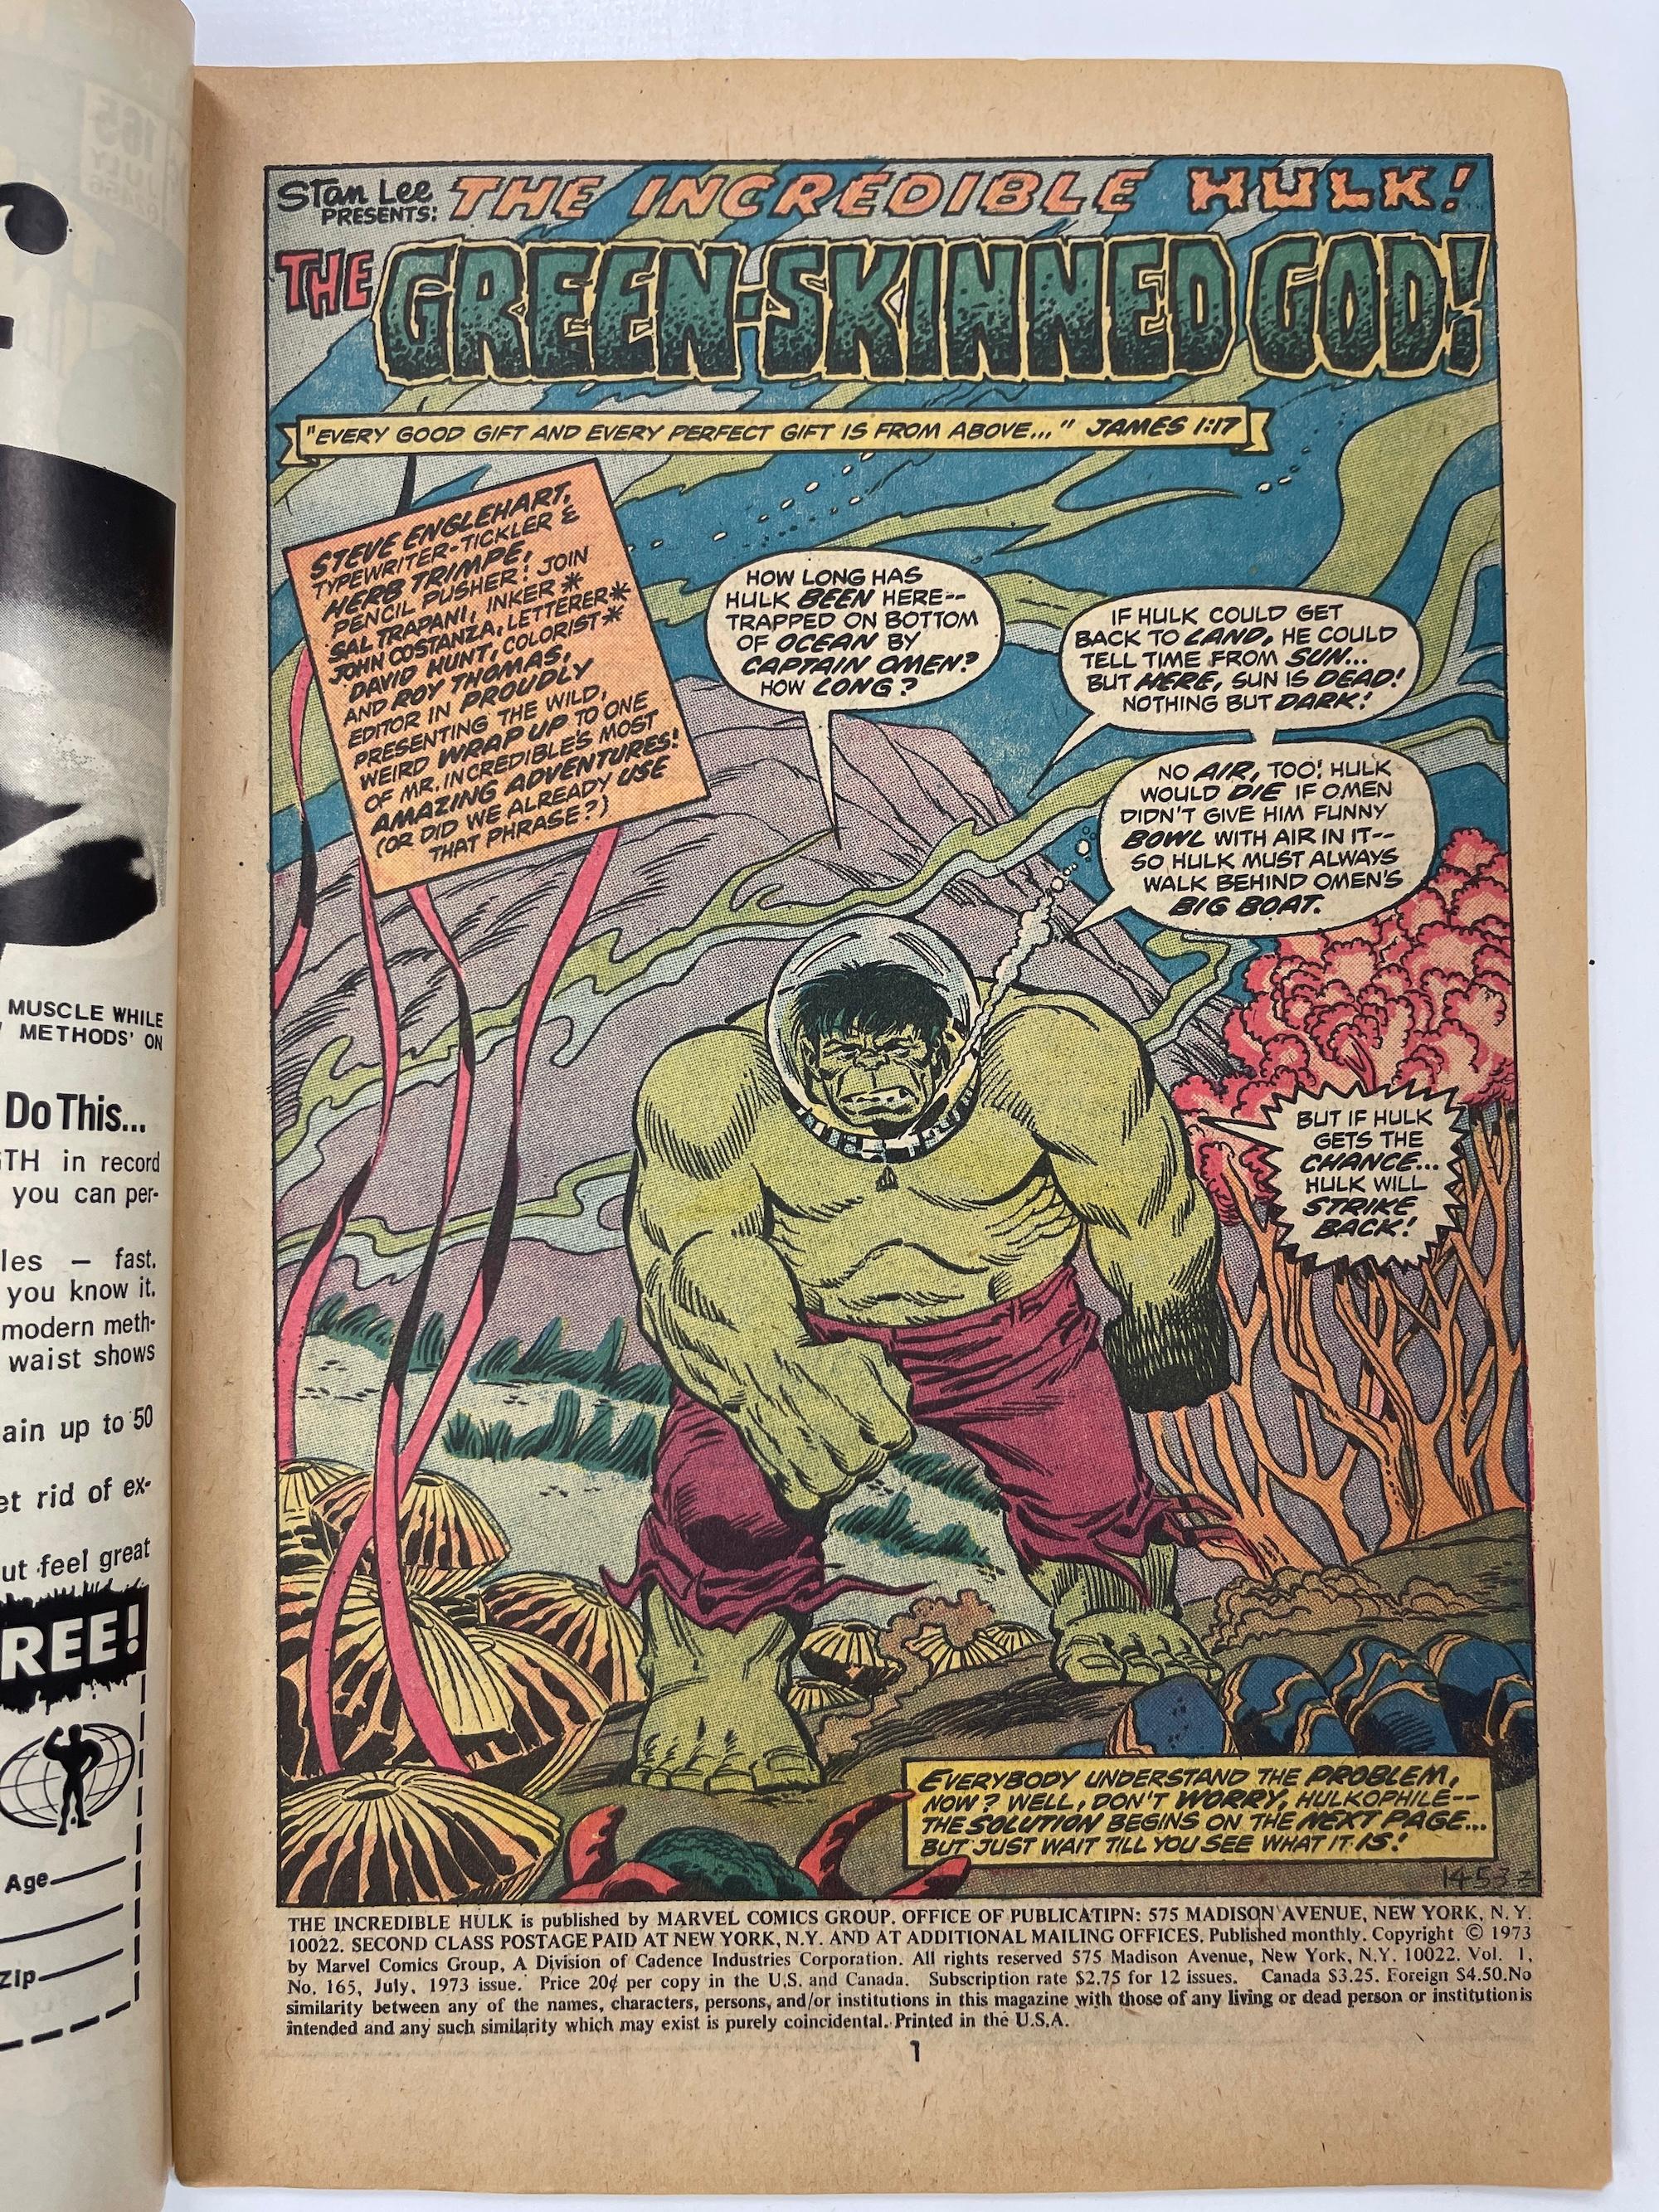 Incredible Hulk #165 Marvel COMIC BOOK 1973